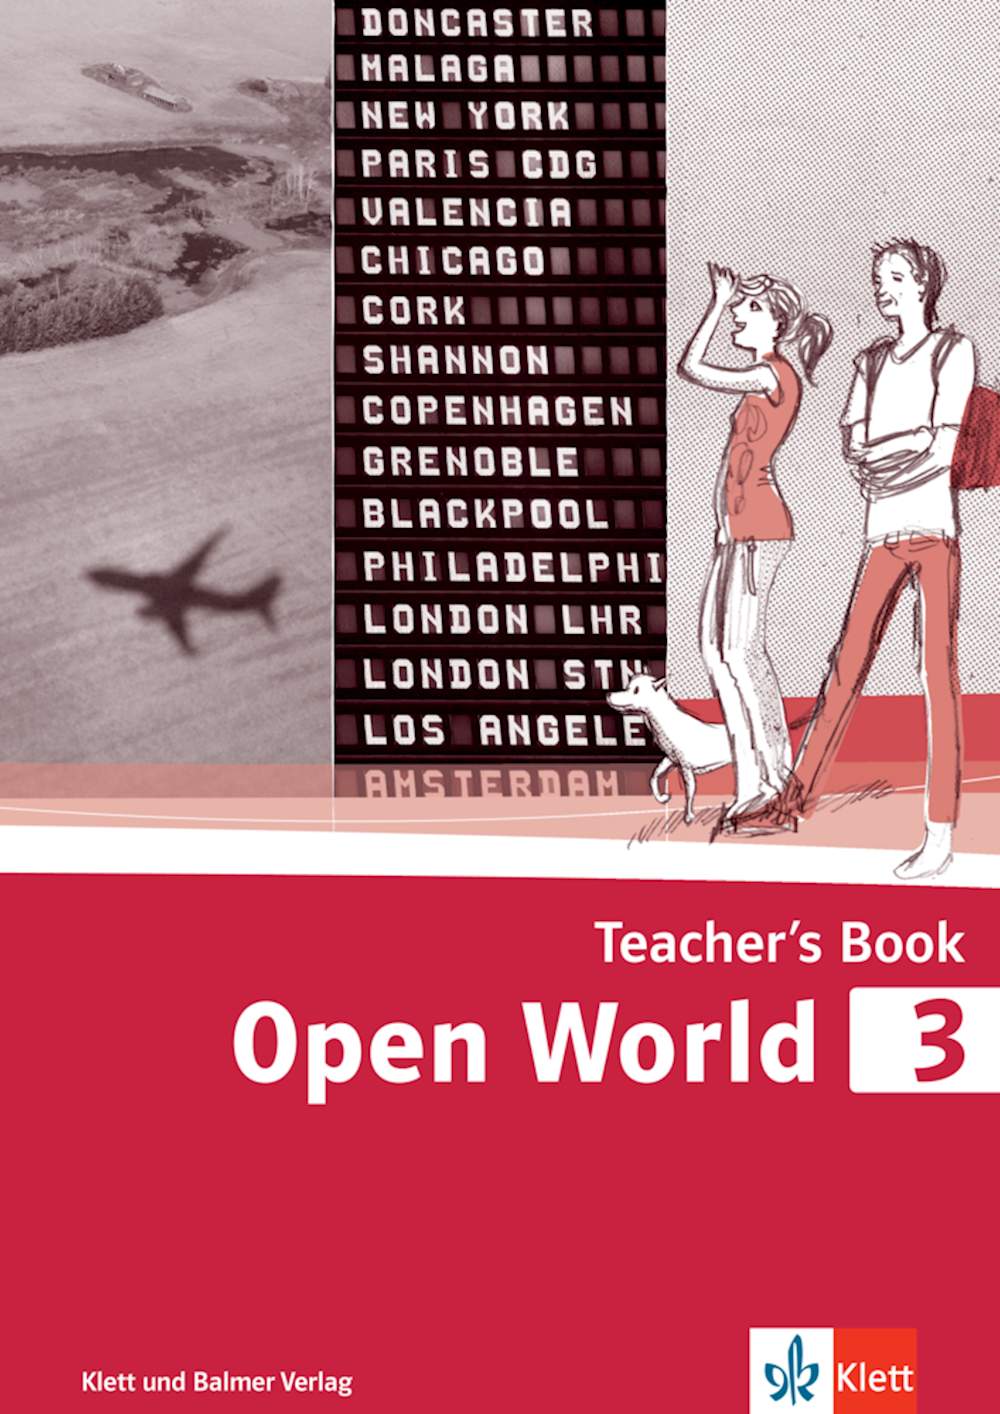 Open World 3, Teacher's Book 